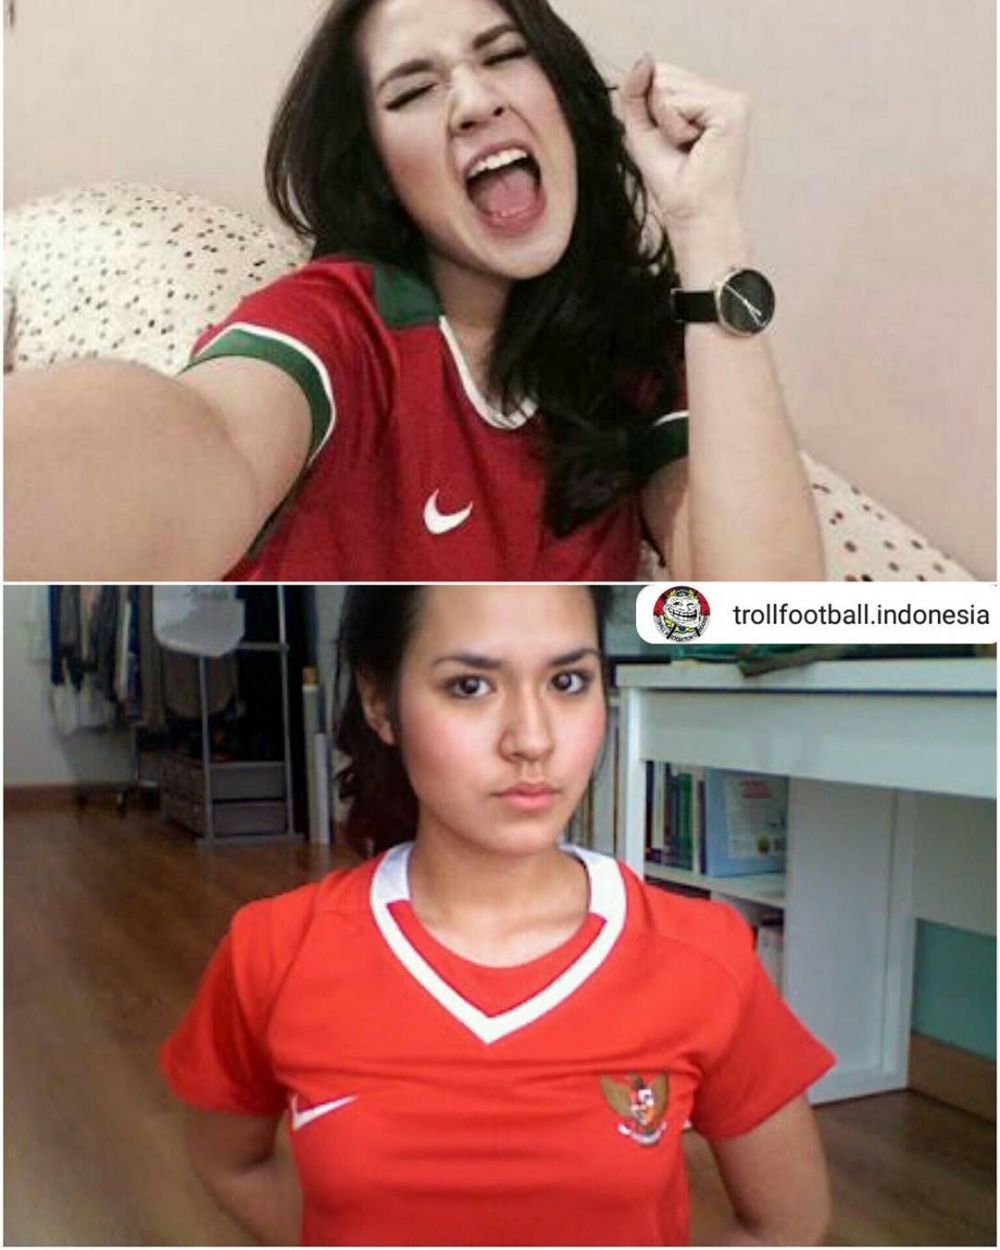 Gaya 6 seleb saat pakai jersey timnas Indonesia, Miyabi paling seksi?